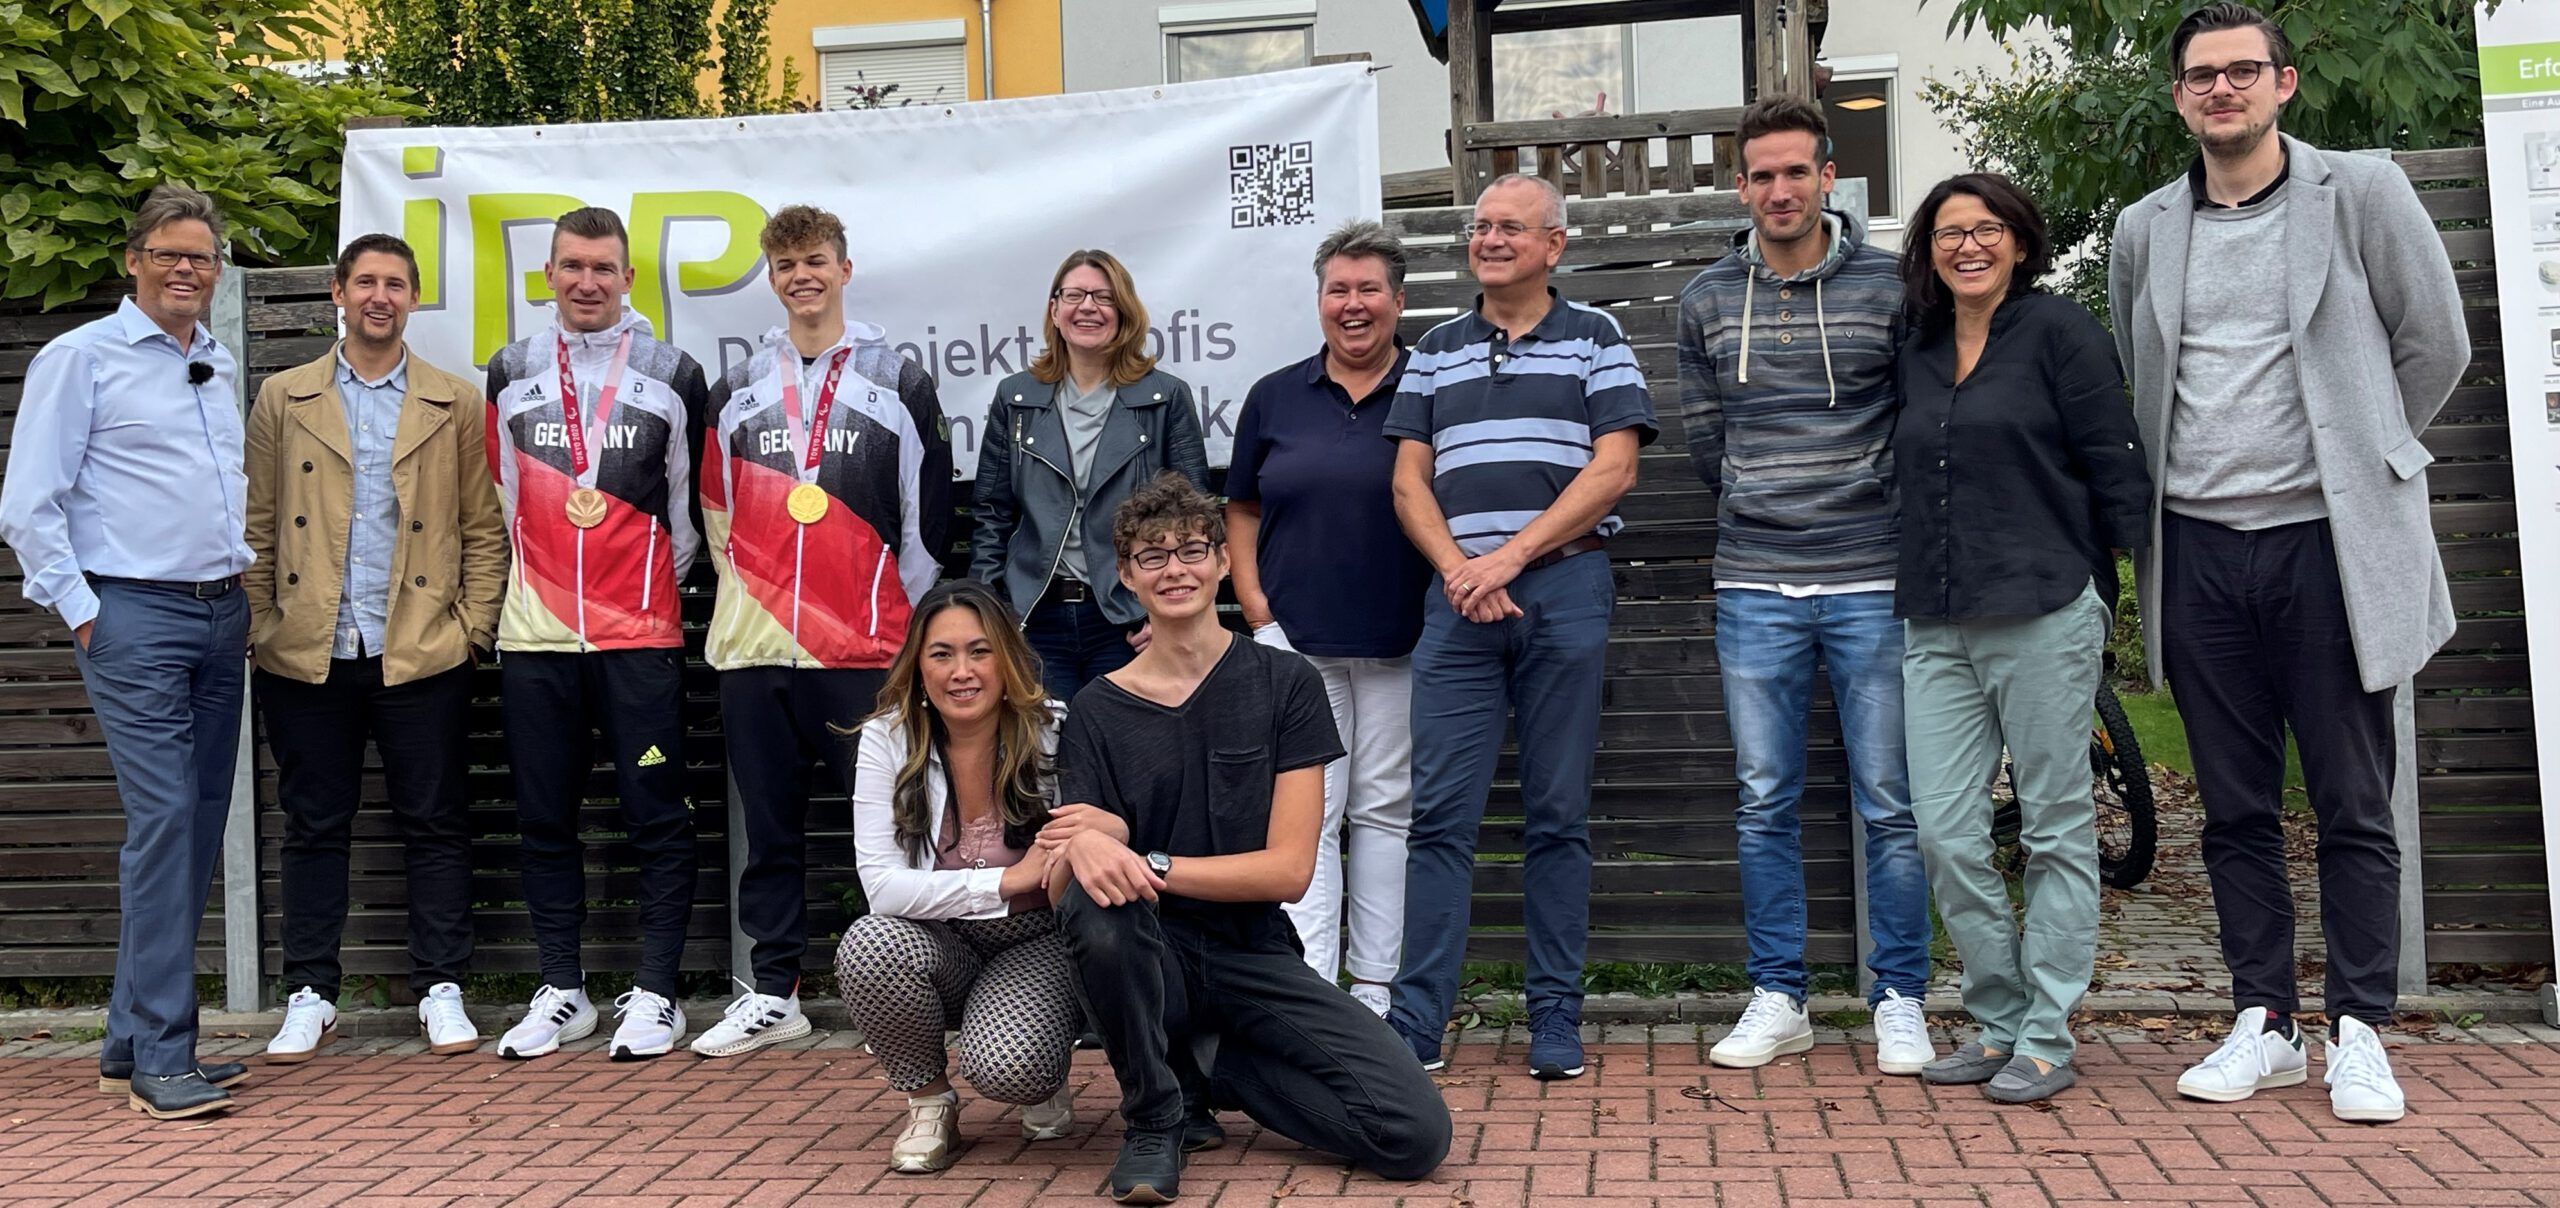 Taliso Engel und Matze Schindler Paralympics Sieger 2021 mit dem Nürnberger Team von IPP